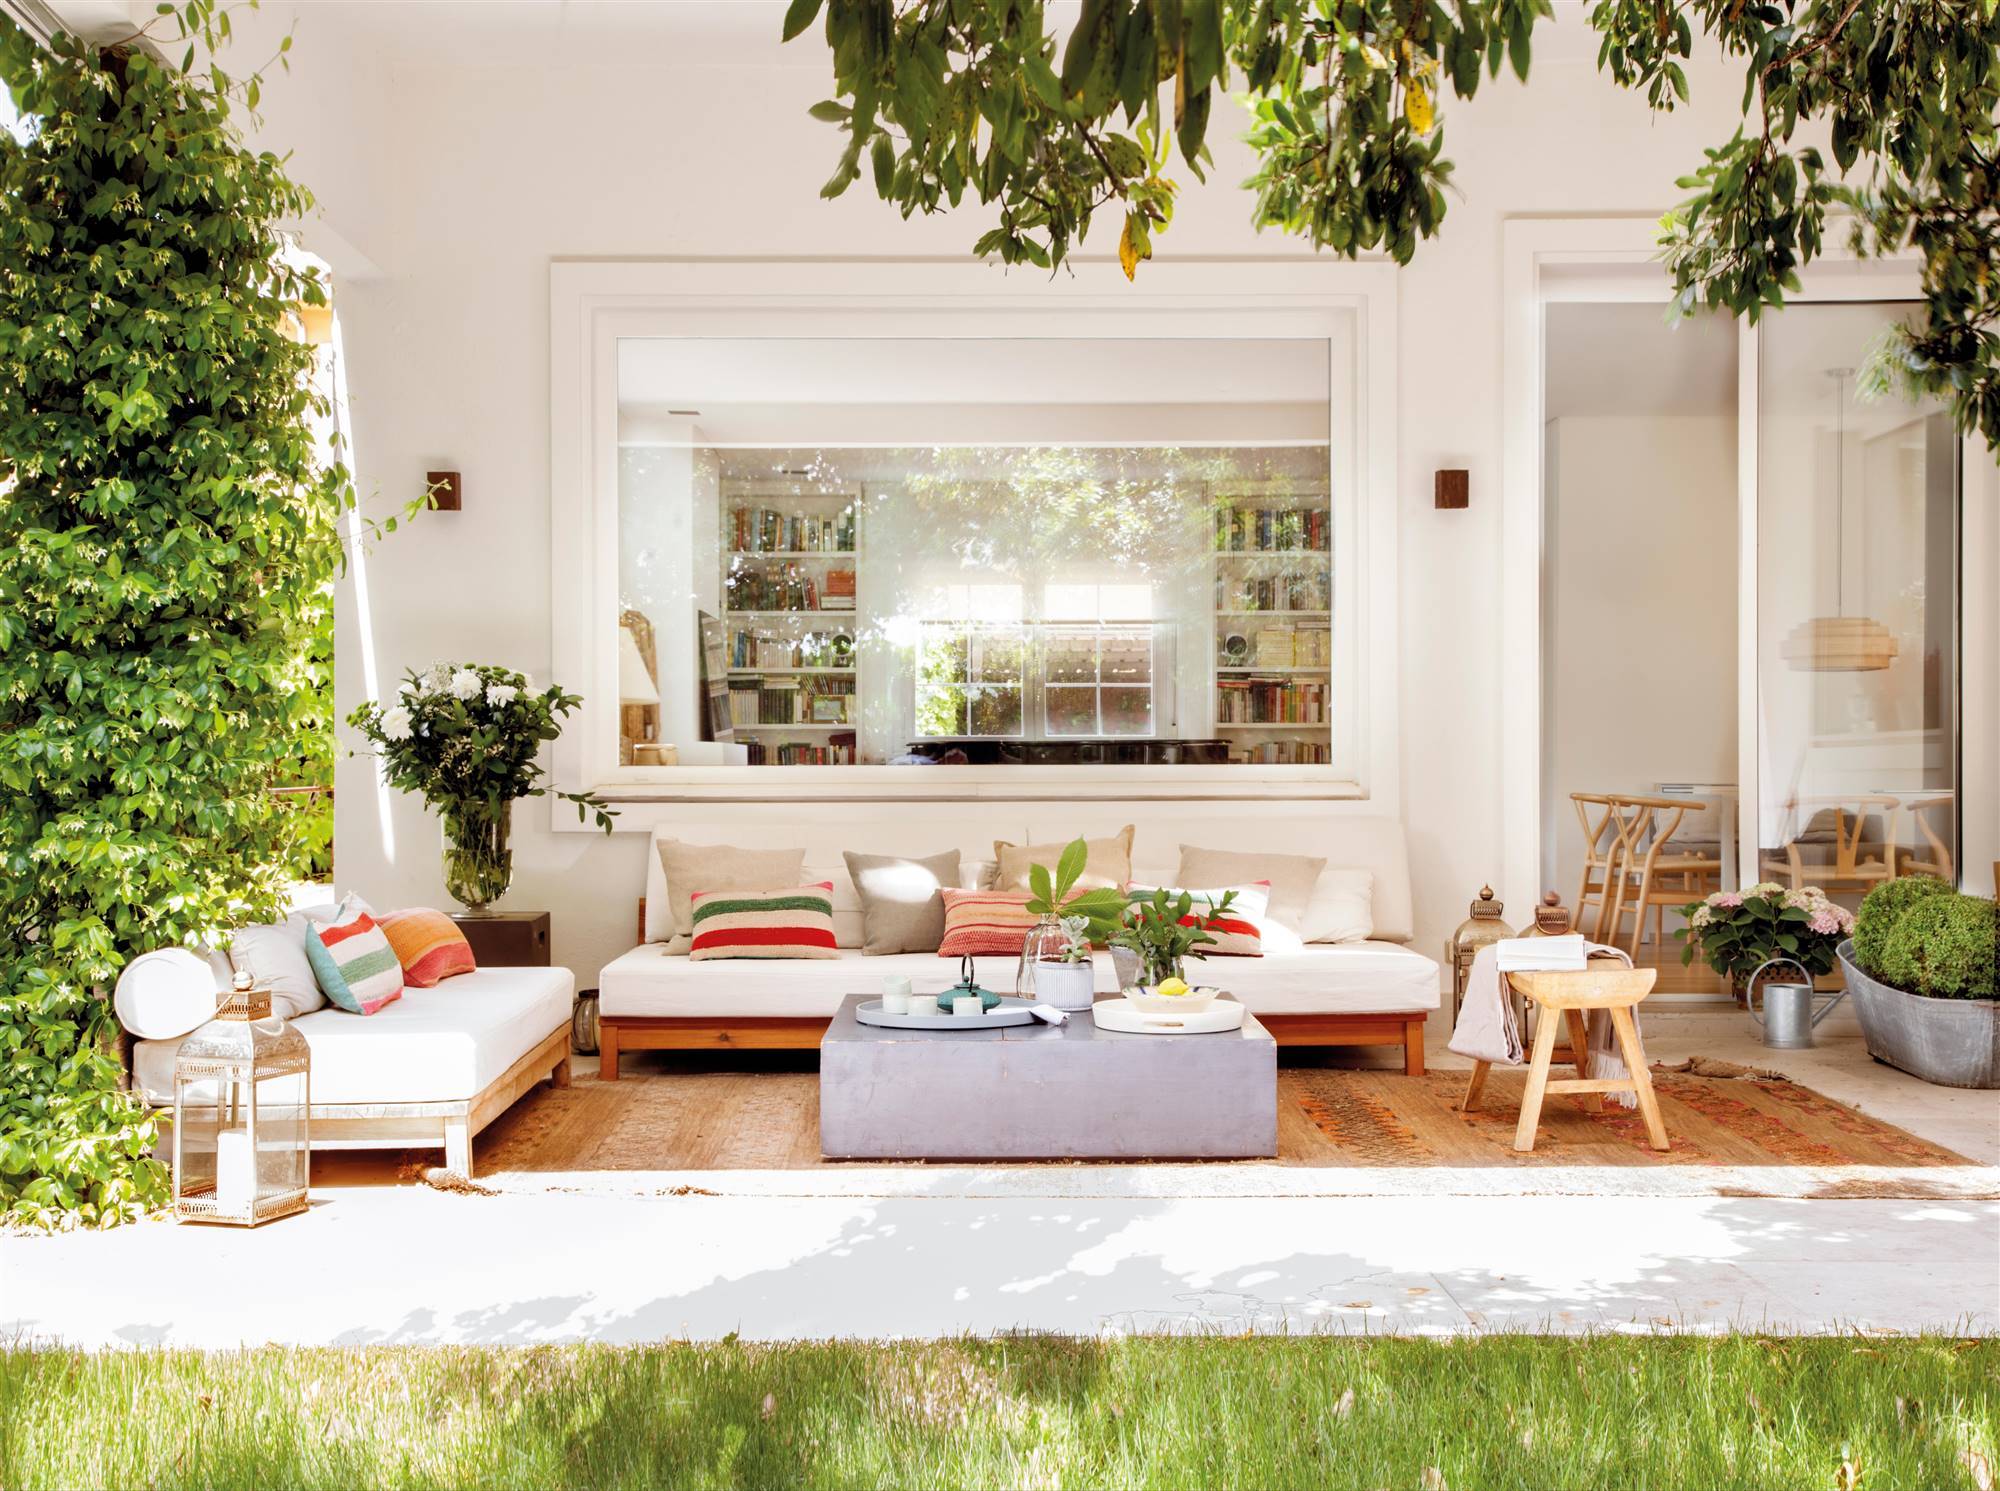 Zona chill out en porche en blanco de estilo moderno y con alfombras étnicas.